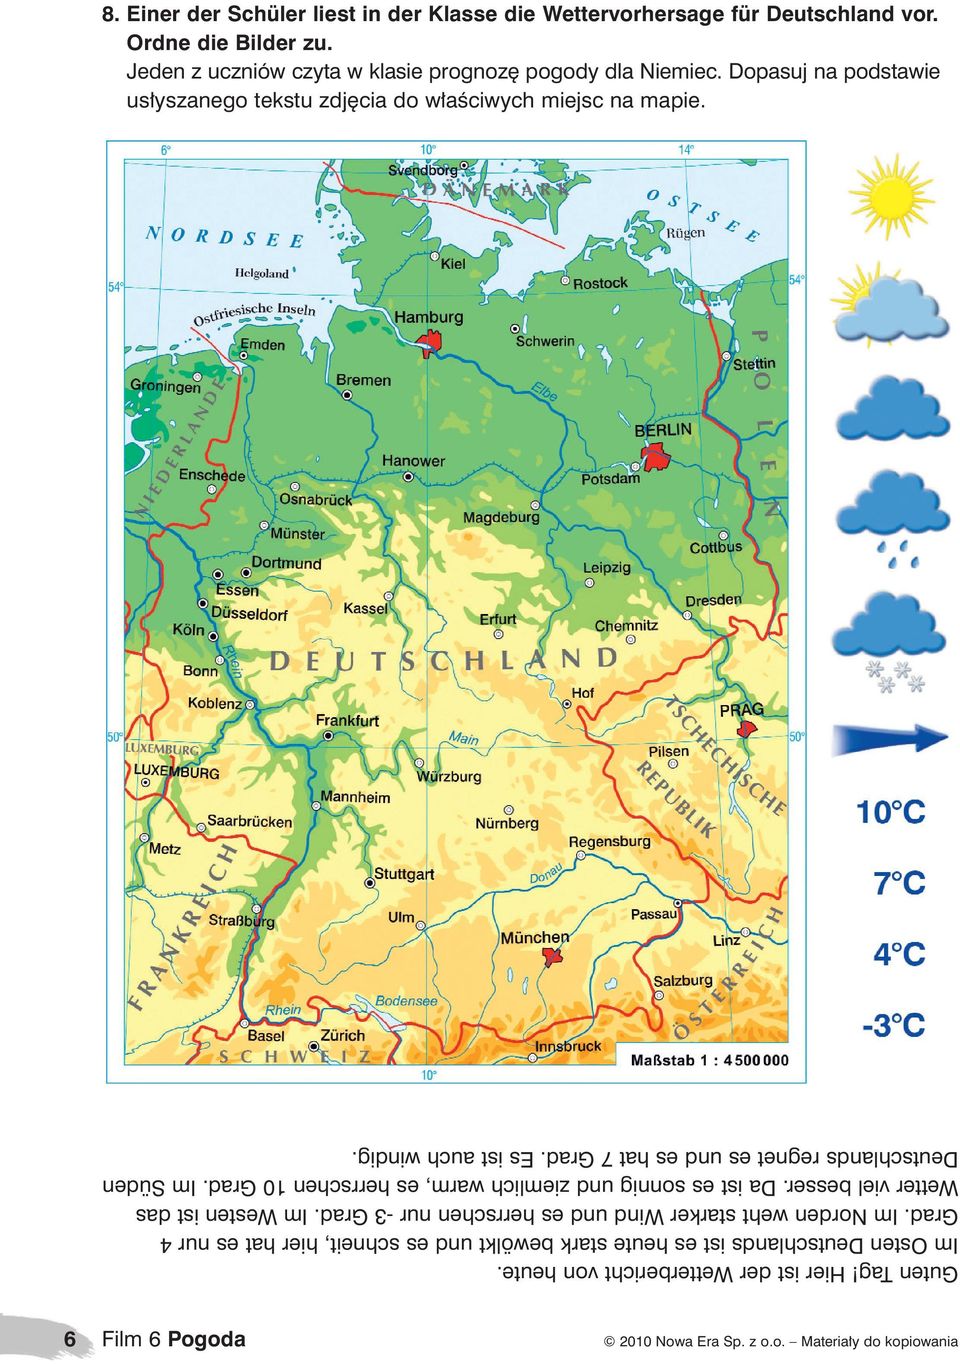 Hier ist der Wetterbericht von heute. Im Osten Deutschlands ist es heute stark bewölkt und es schneit, hier hat es nur 4 Grad.